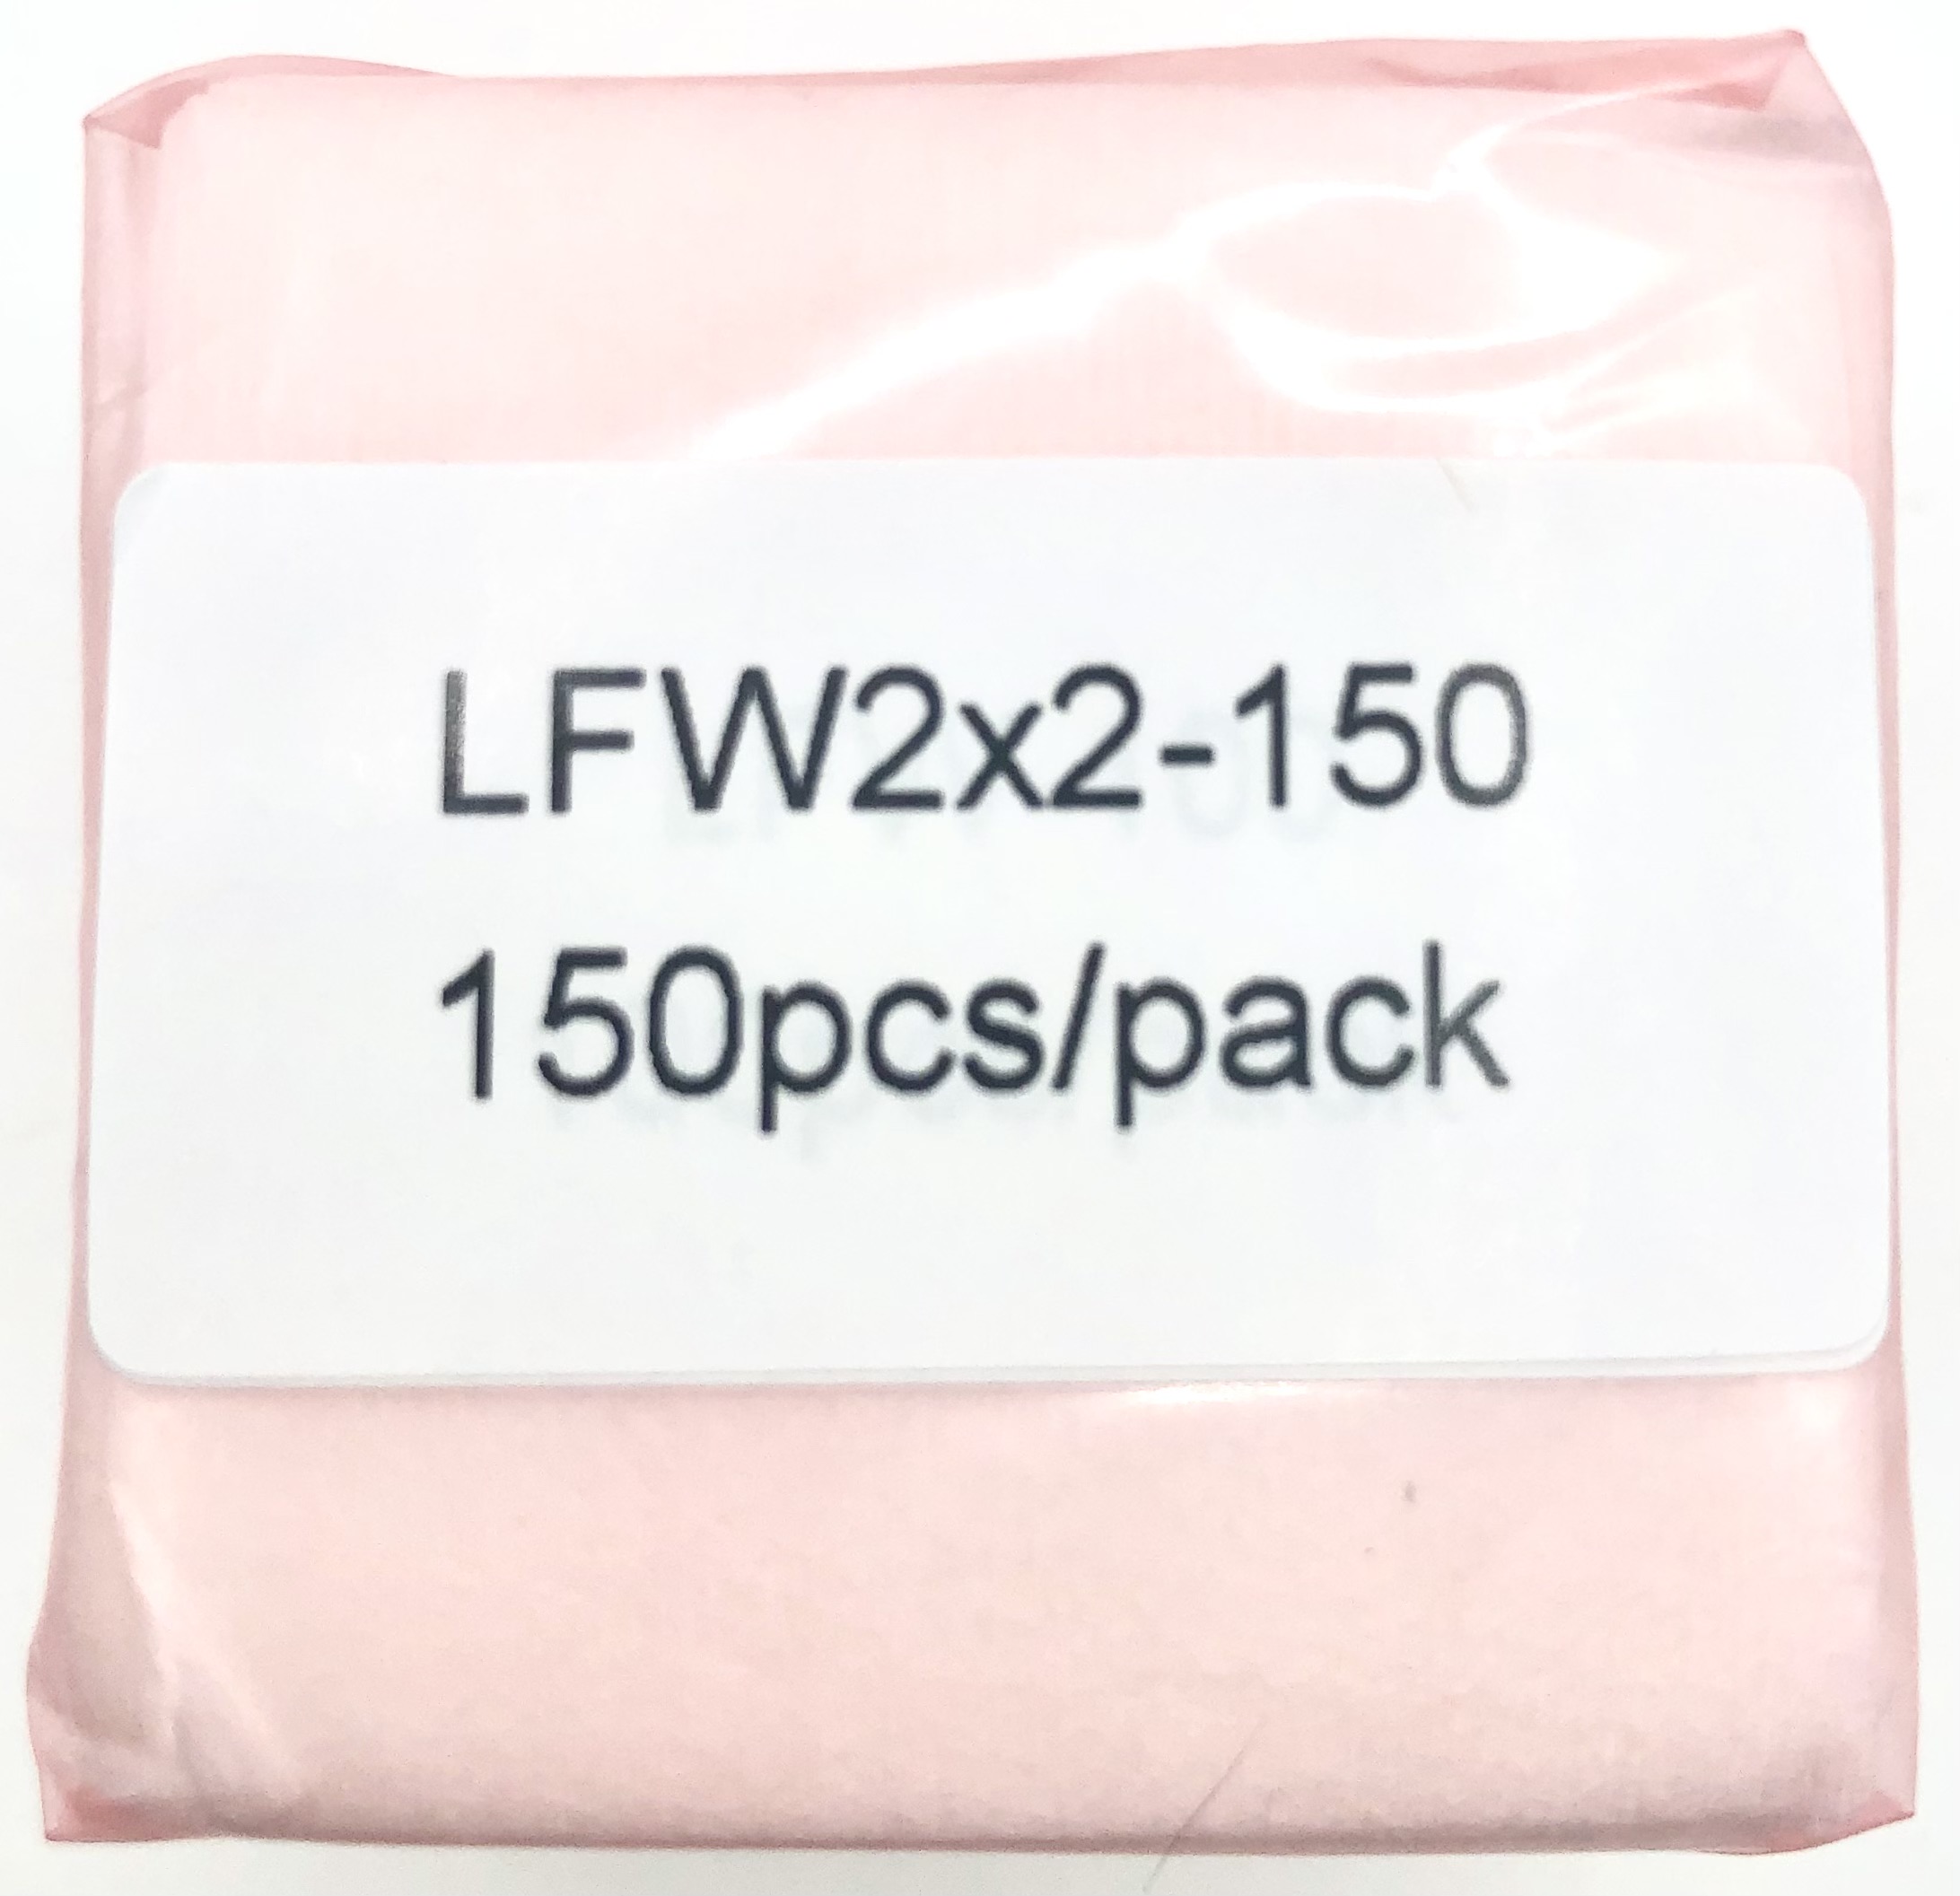 LFW2X2-150